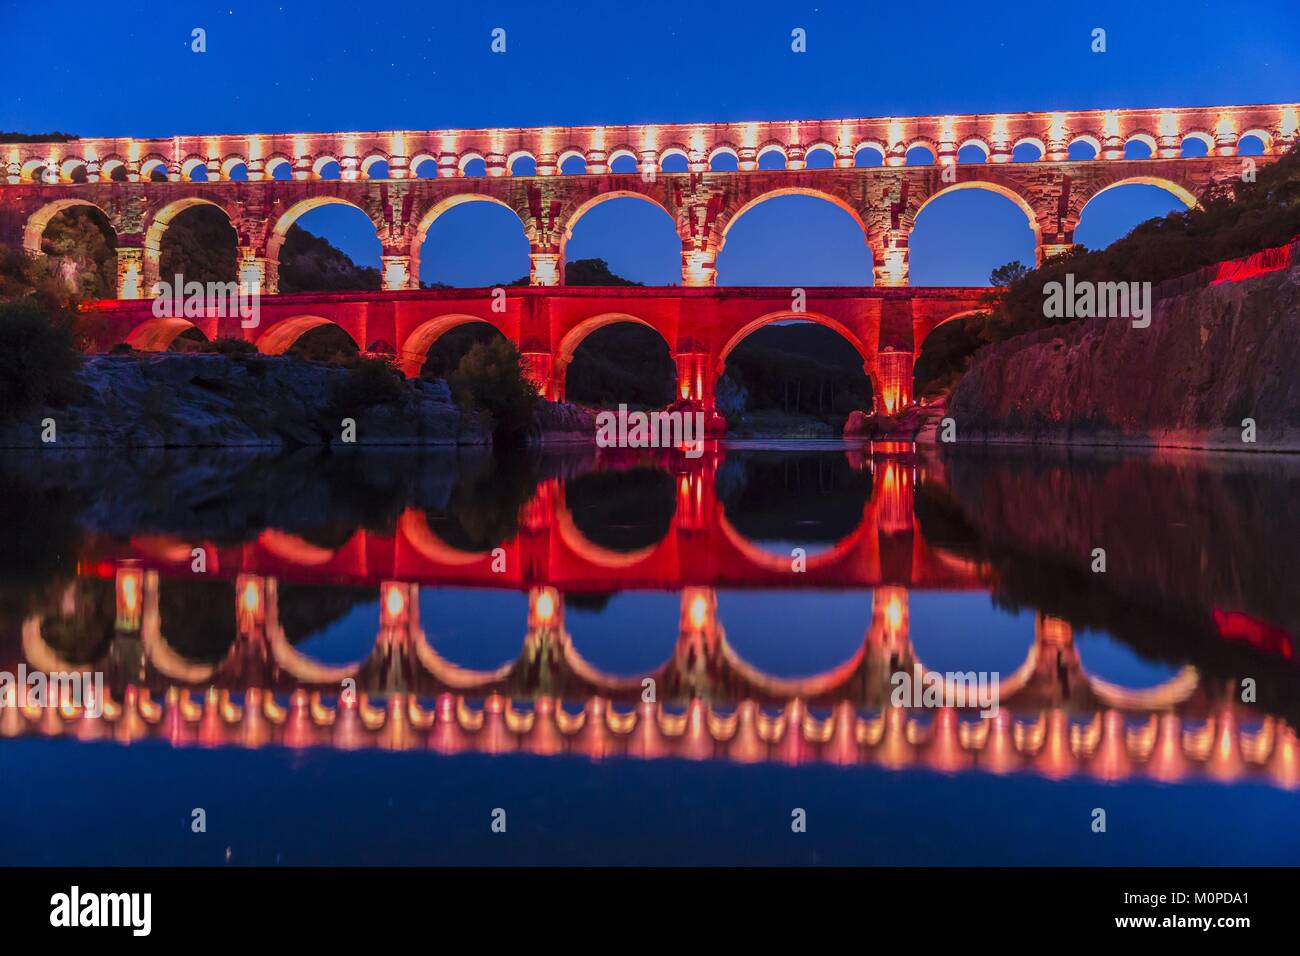 Frankreich, Gard, Vers Pont du Gard die Pont du Gard als Weltkulturerbe von der UNESCO, Big Site von Frankreich, römische Aquädukt aus dem 1. Jahrhundert, die Schritte über den Gardon, Konzeption Licht von Guillaume Sarrouy Stockfoto